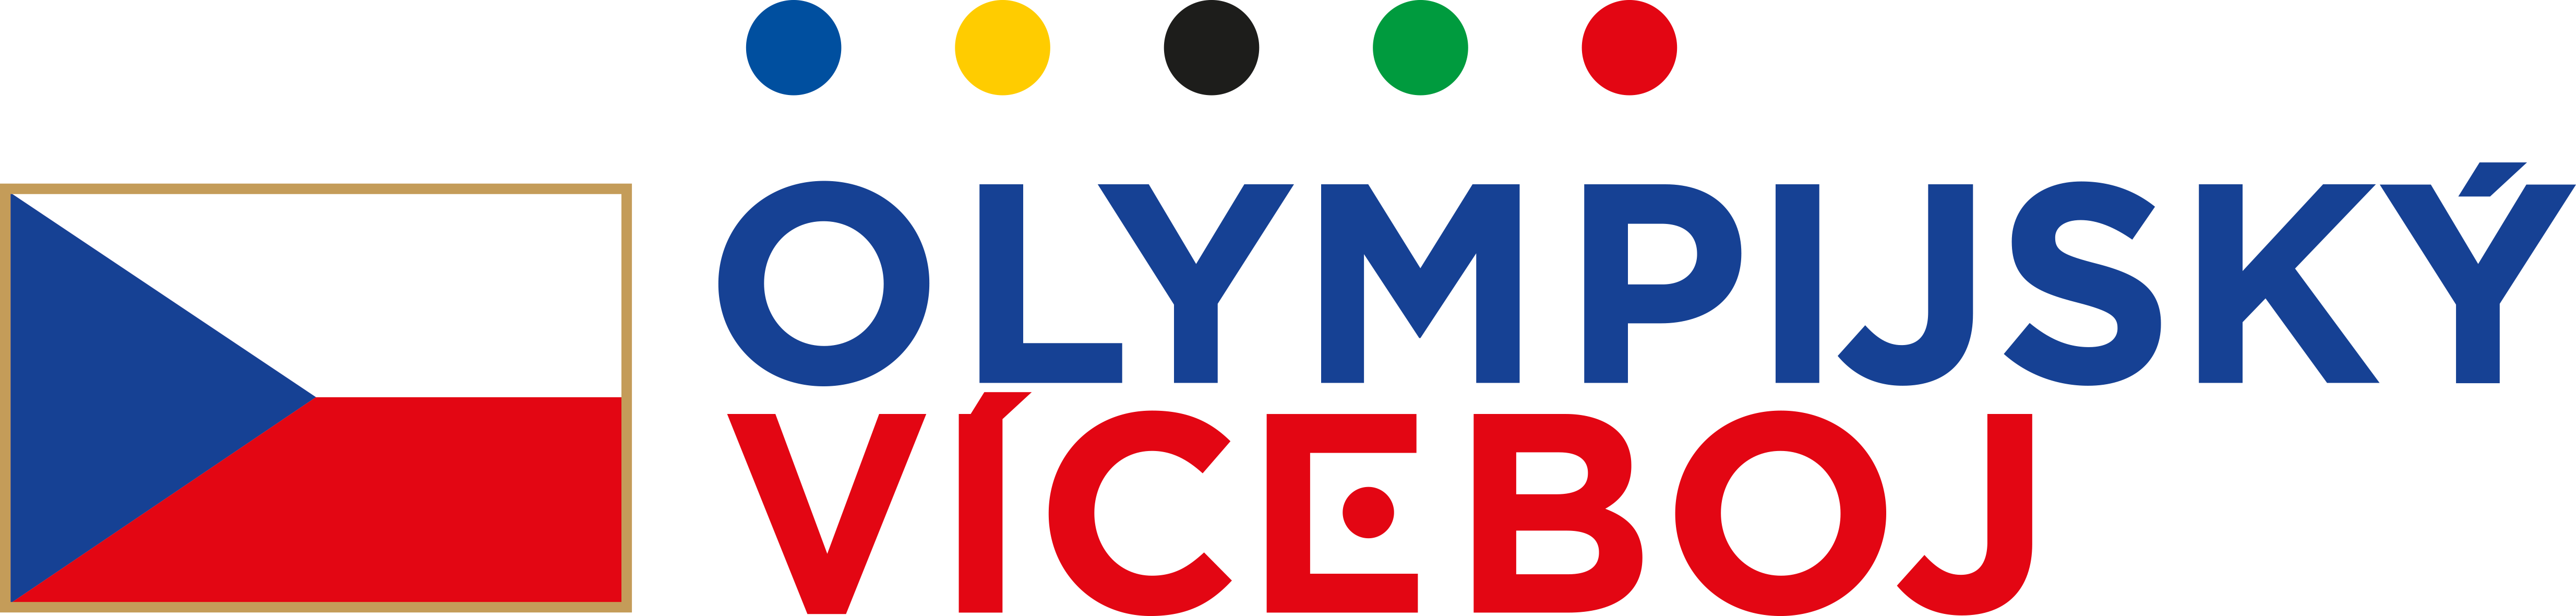 Logo olympijský víceboj a odkaz na úvodní stránku